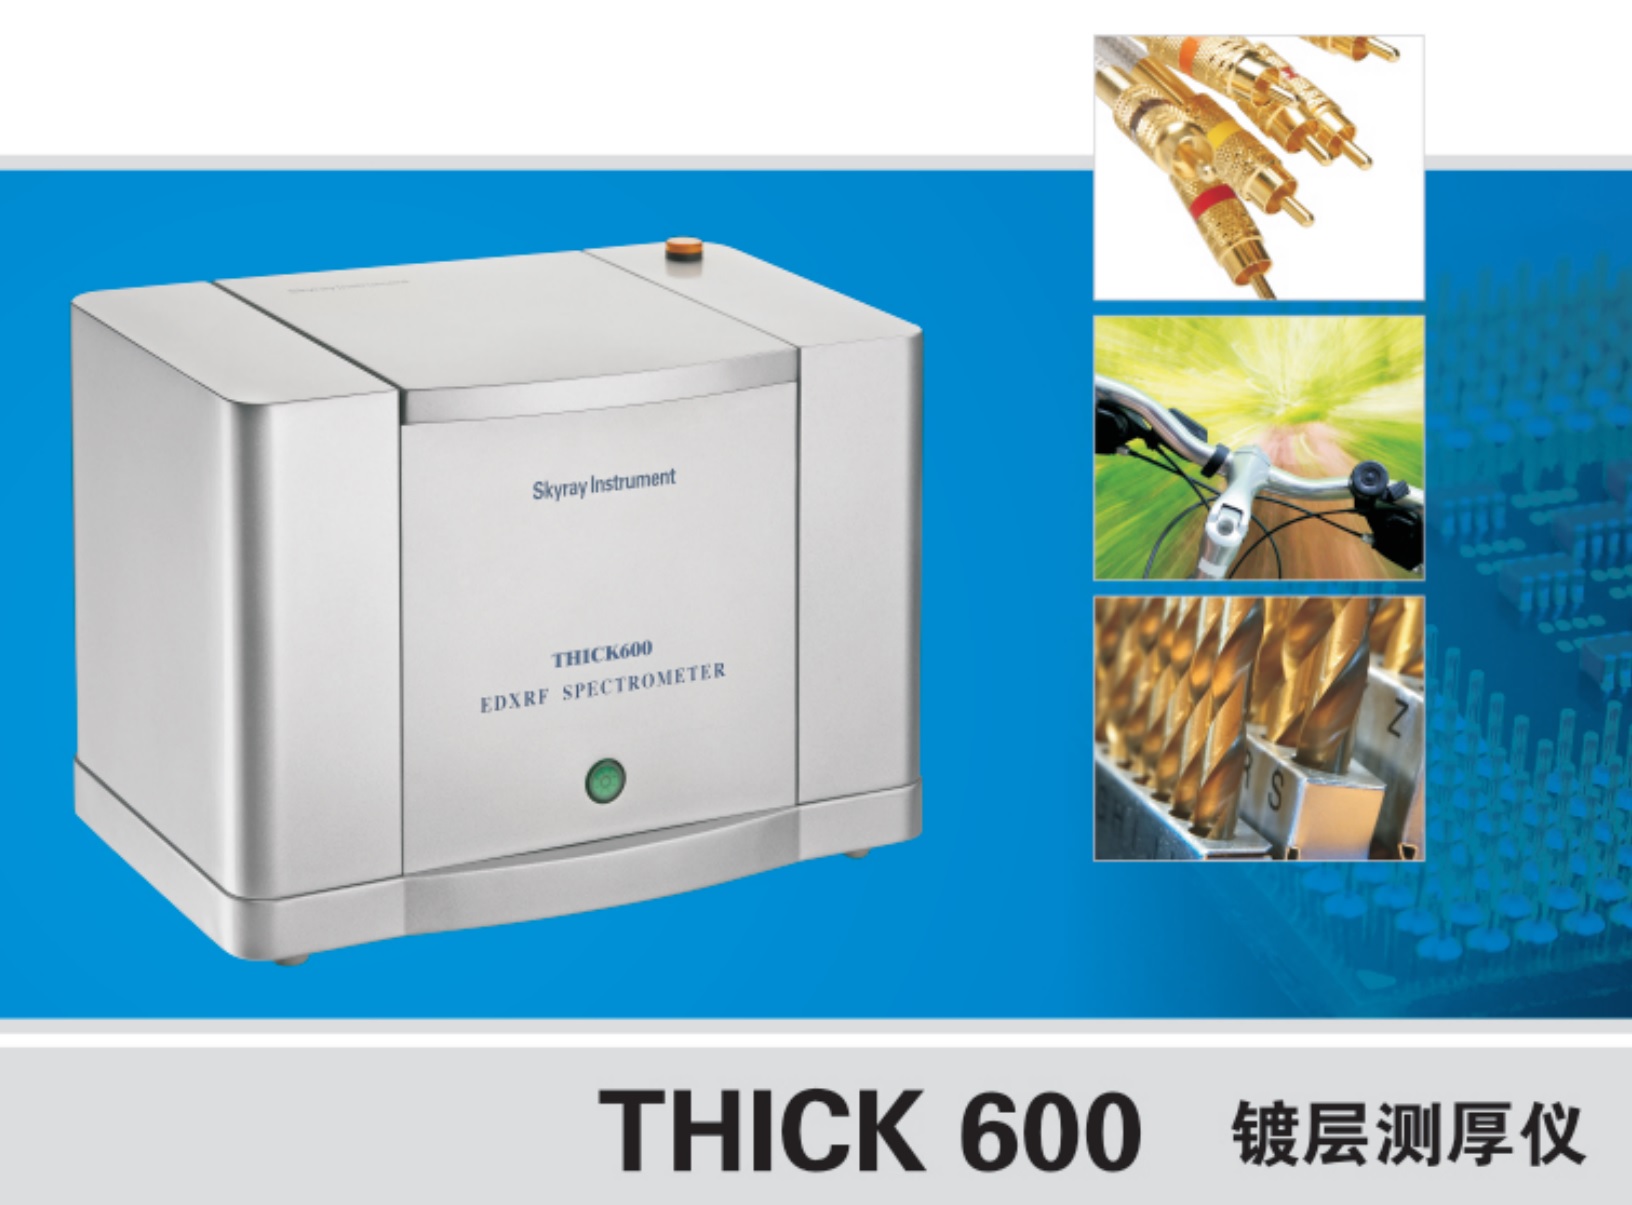 江蘇天瑞儀器股份有限公司-鍍層厚度測試儀 THICK600 